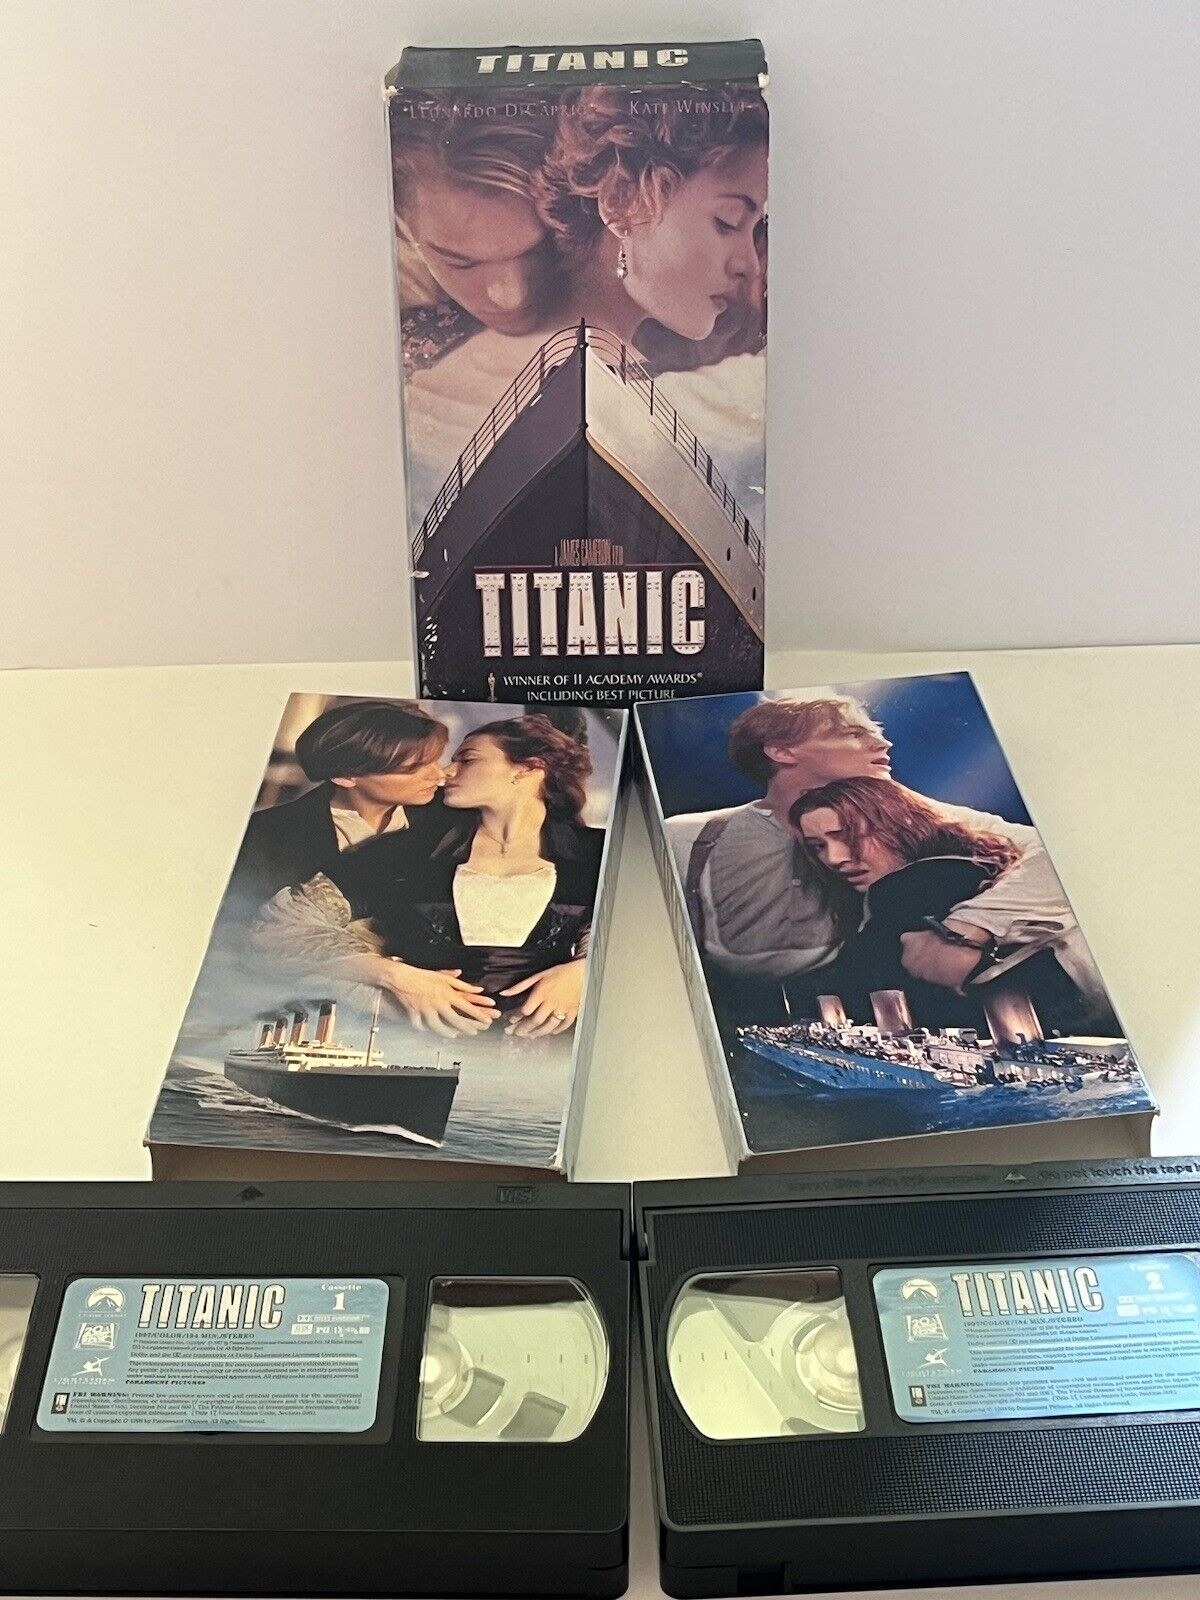 &quot;Titanic&quot; VHS tapes